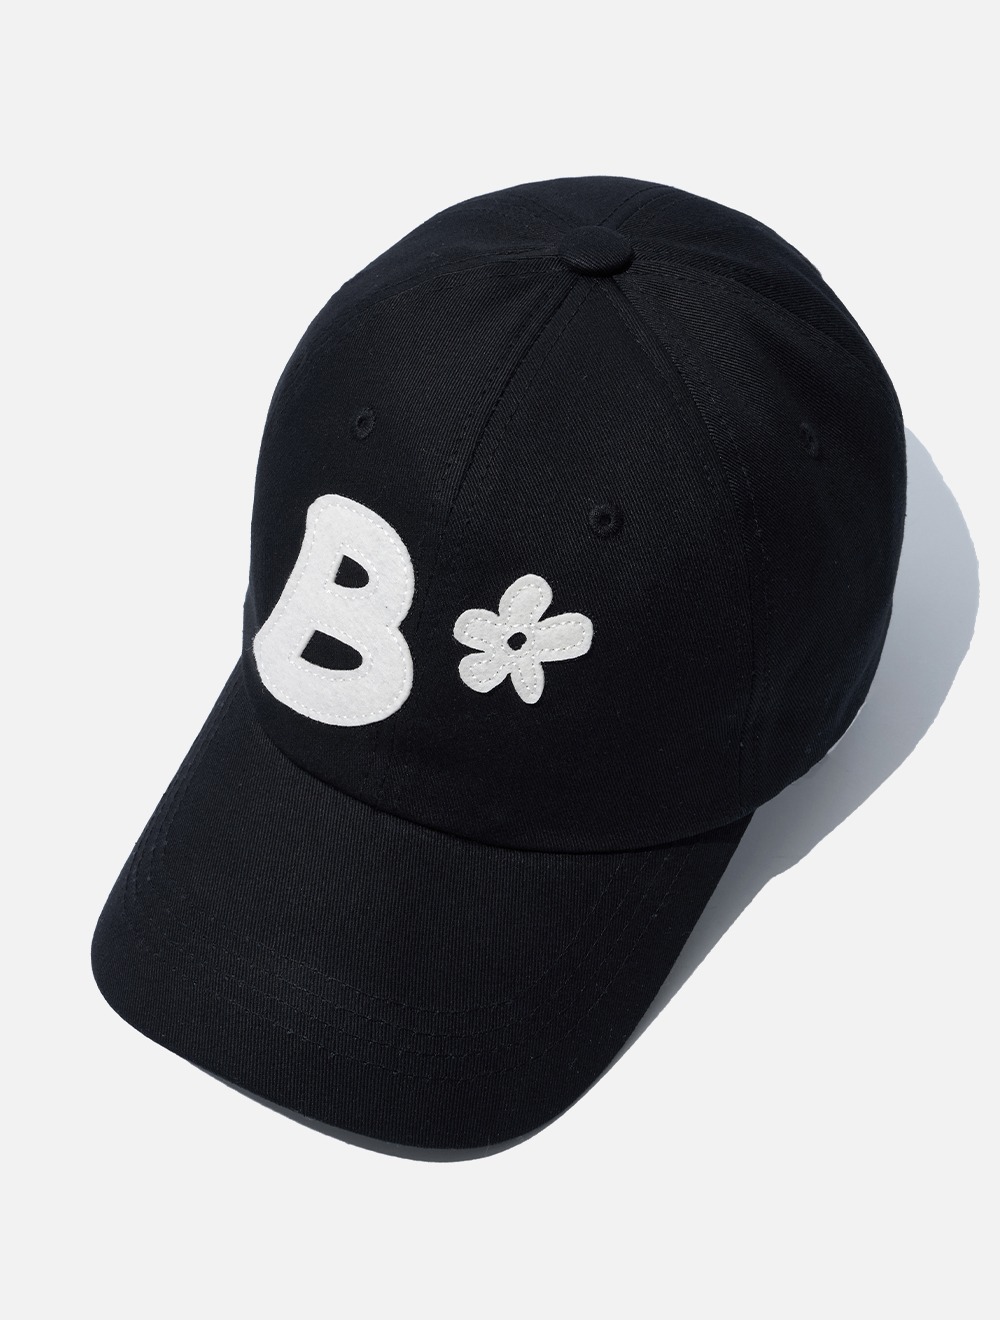 B Logo Ball Cap_Black